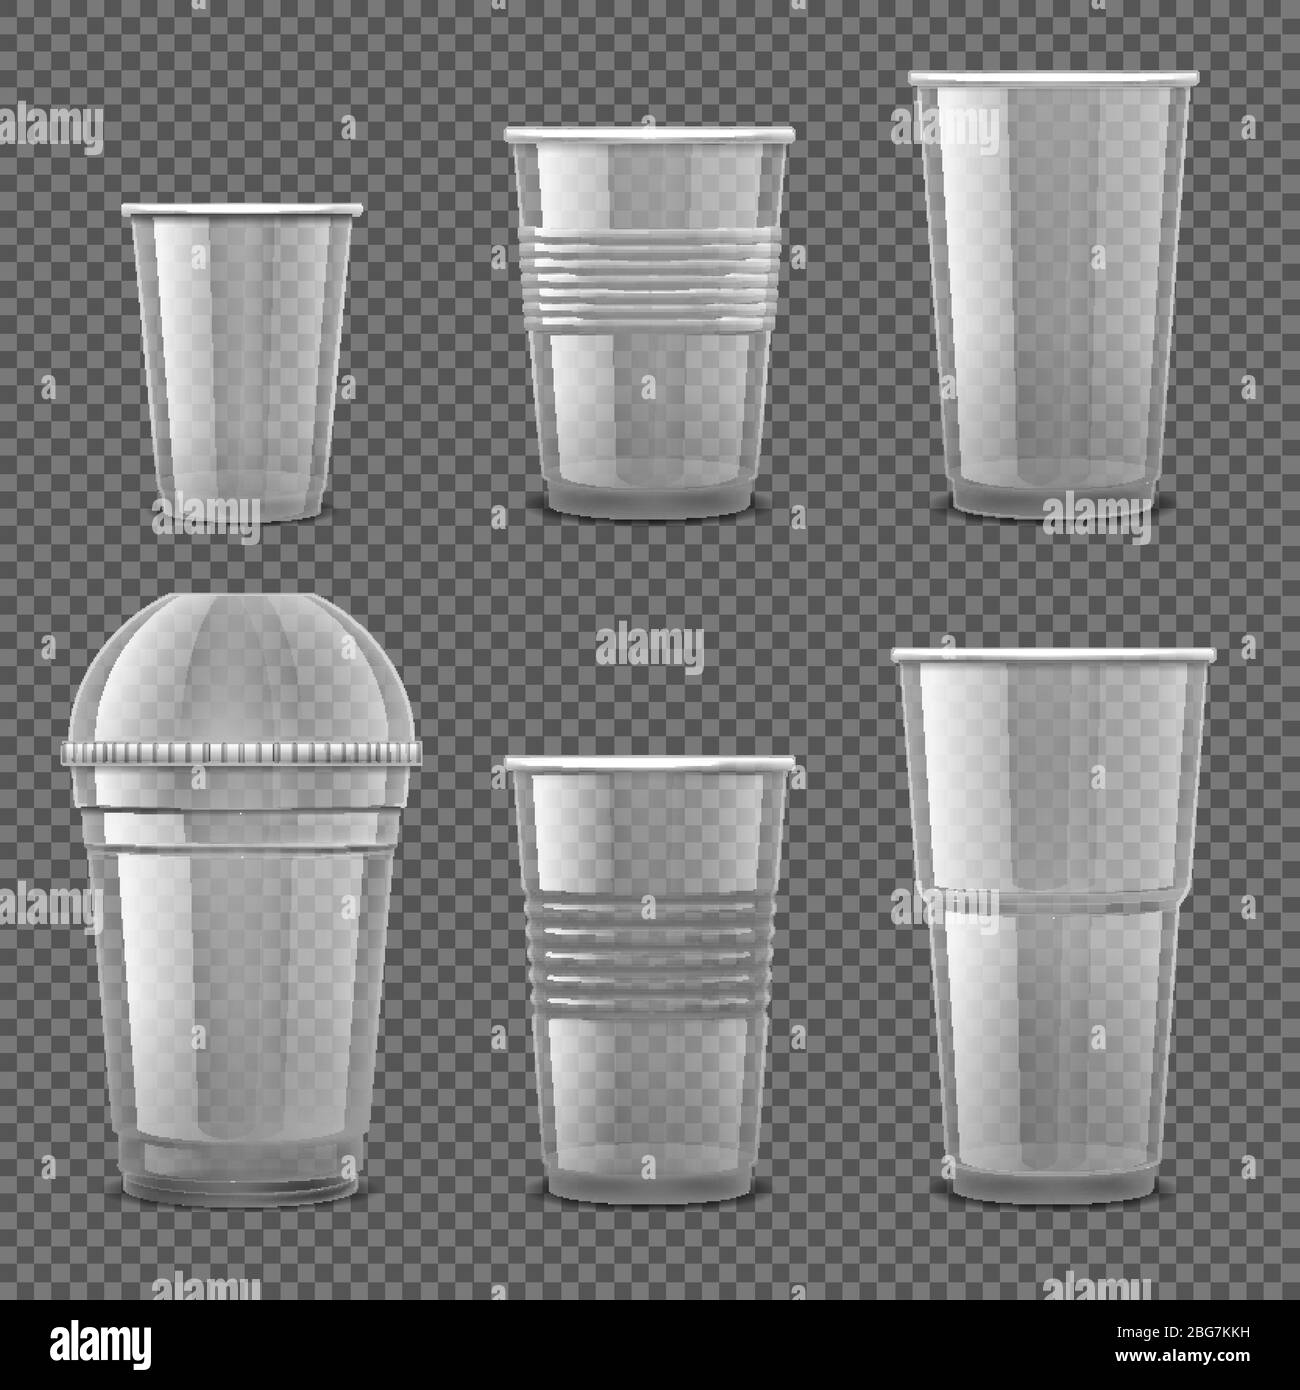 Tazze monouso in plastica trasparente vuote. Set di vettori isolati per contenitori per bevande da asporto. Illustrazione del contenitore in plastica, monouso trasparente per Illustrazione Vettoriale